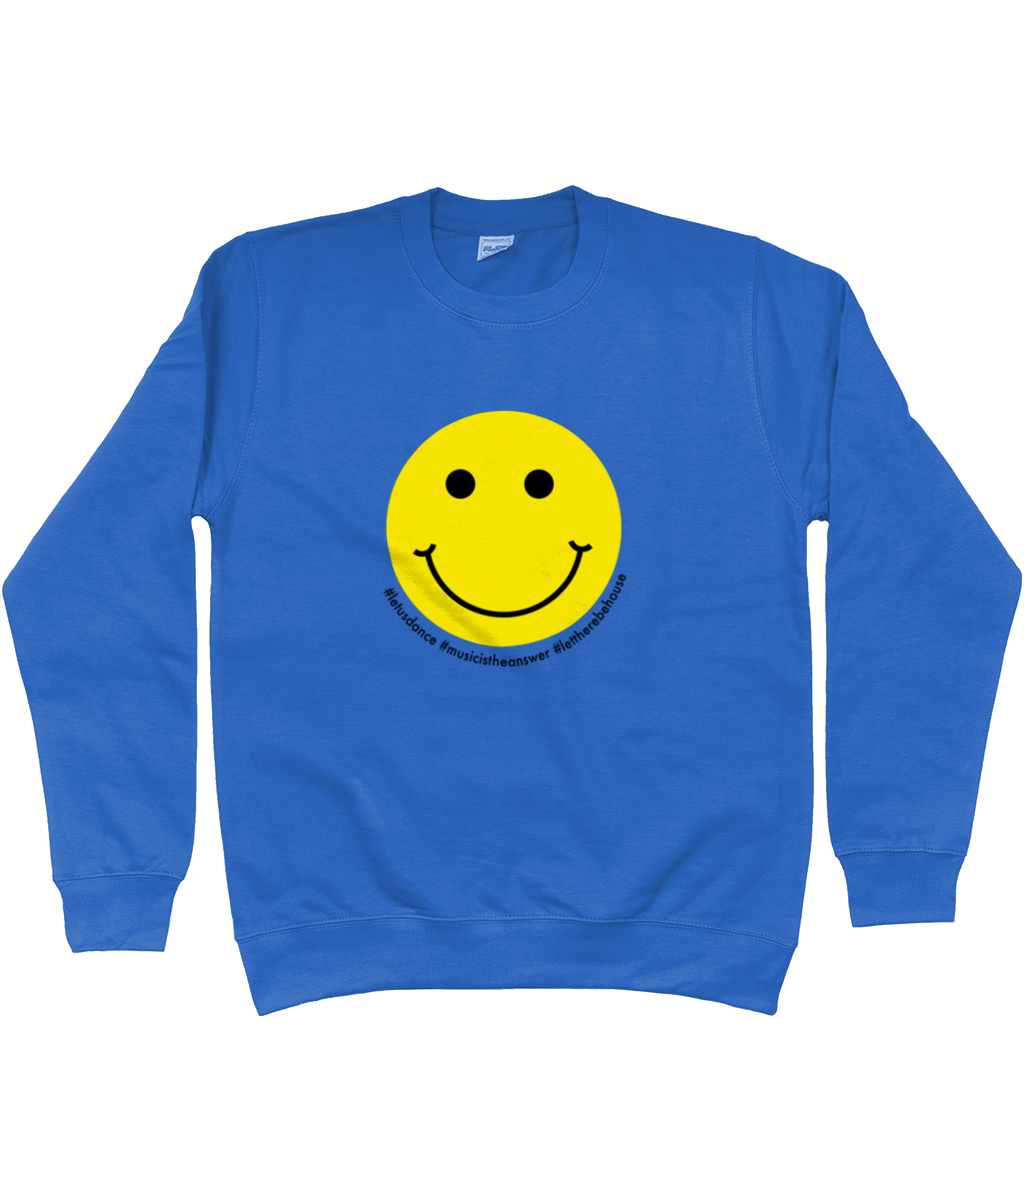 Sweatshirt Smiley Yellow & Black